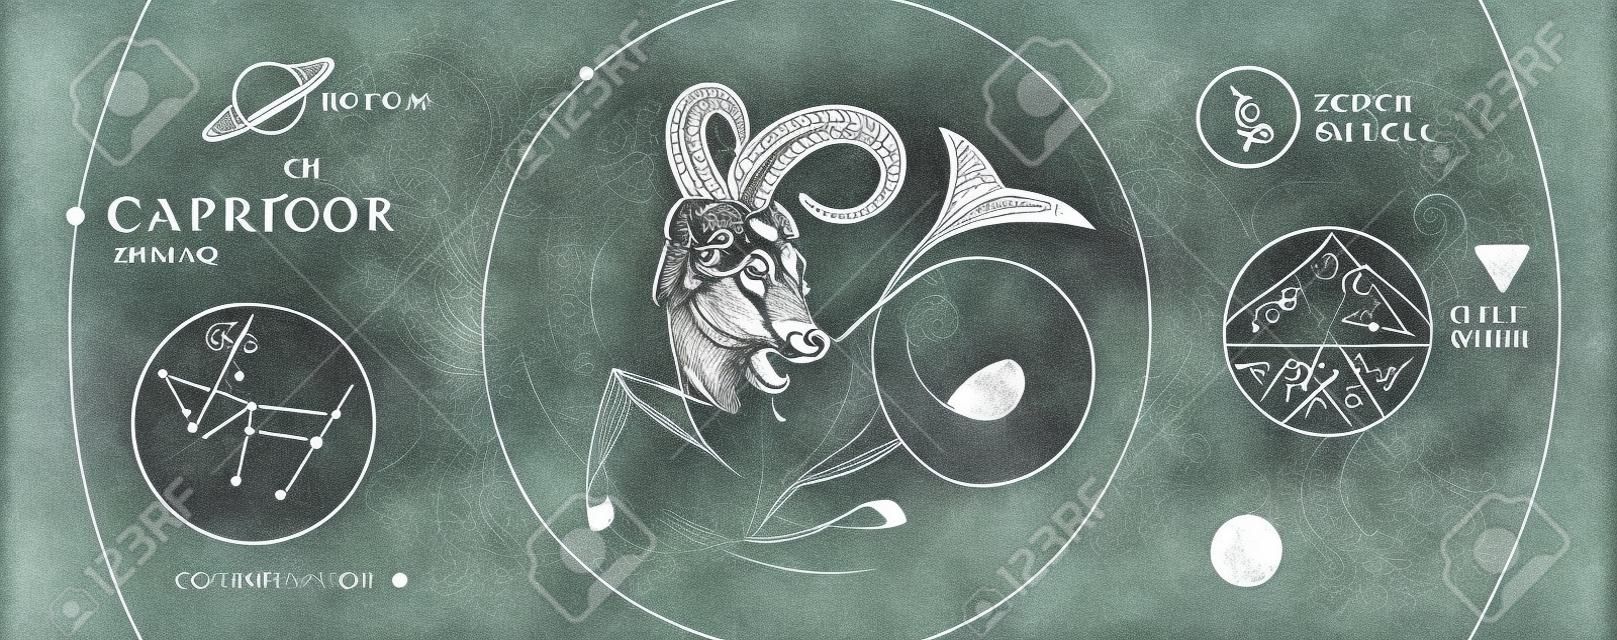 Moderne magische Hexenkarte mit Astrologie-Sternzeichen Steinbock. Realistische Handzeichnung Widder oder Mufflonkopf. Zodiac-Charakteristik